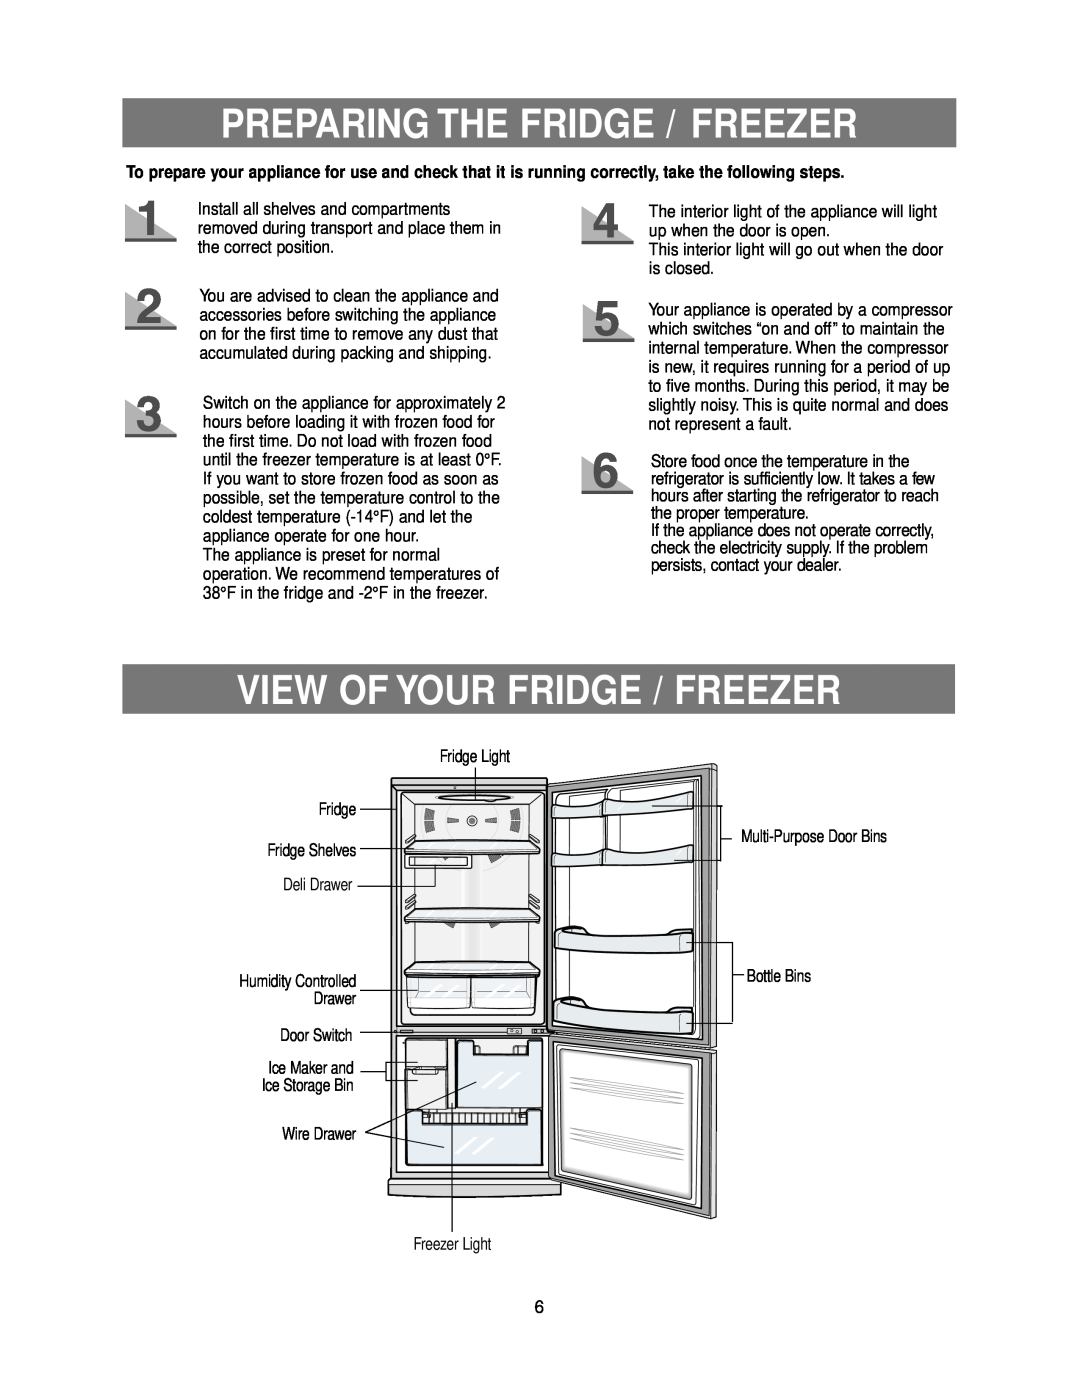 Samsung RB215LA Preparing The Fridge / Freezer, View Of Your Fridge / Freezer, Multi-Purpose Door Bins Bottle Bins 